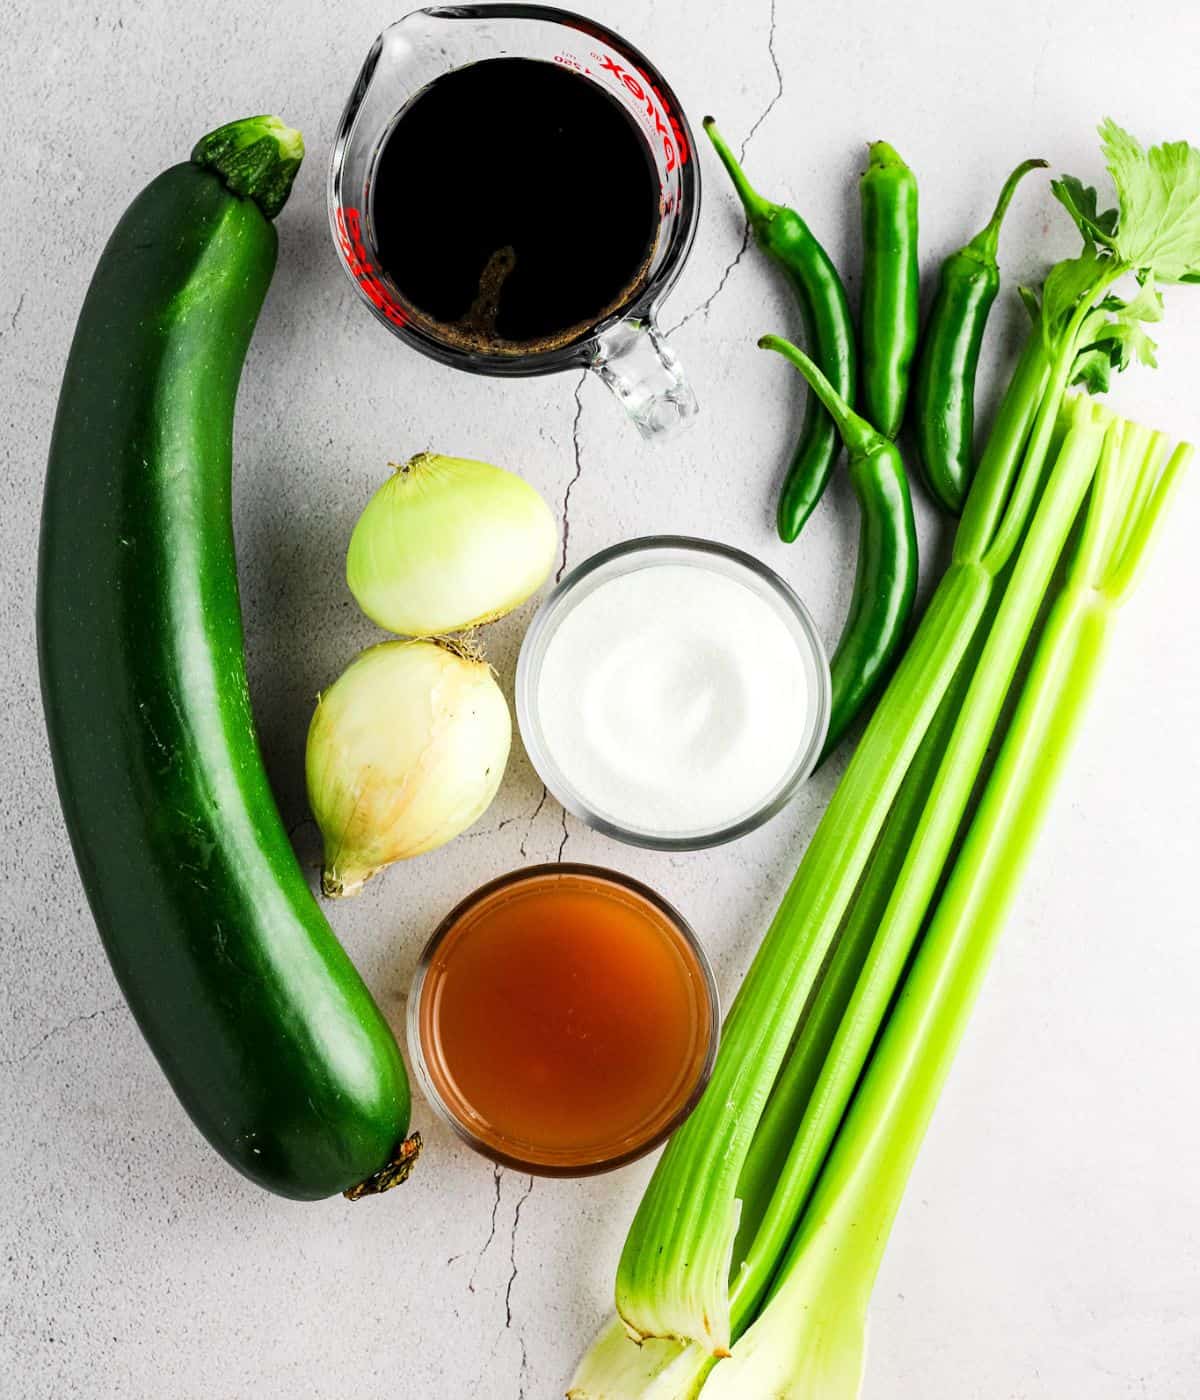 Ingredients for Korean vegetable pickles.